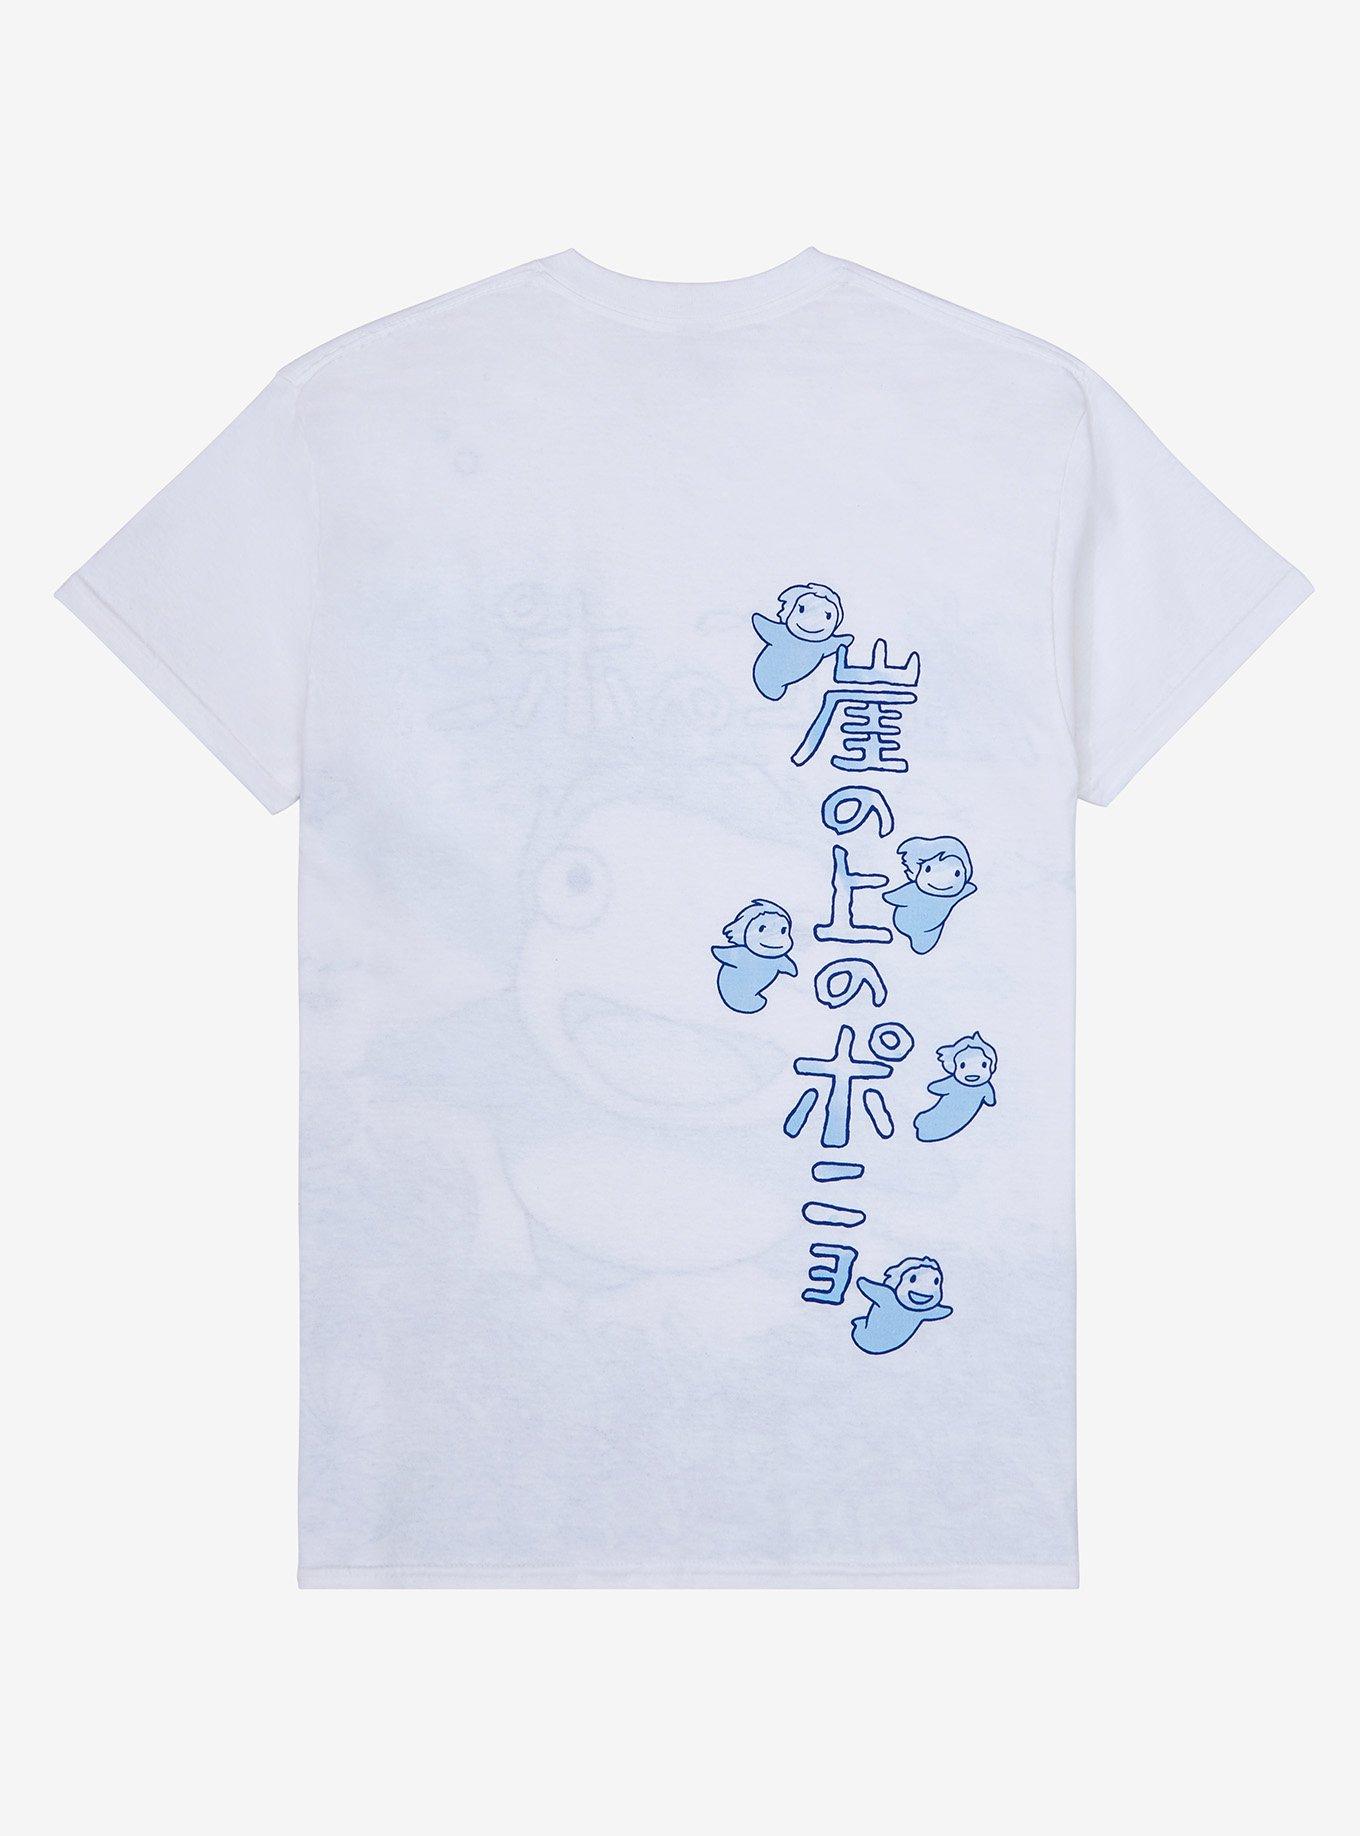 Studio Ghibli Ponyo Jumbo Graphic T-Shirt, MULTI, alternate